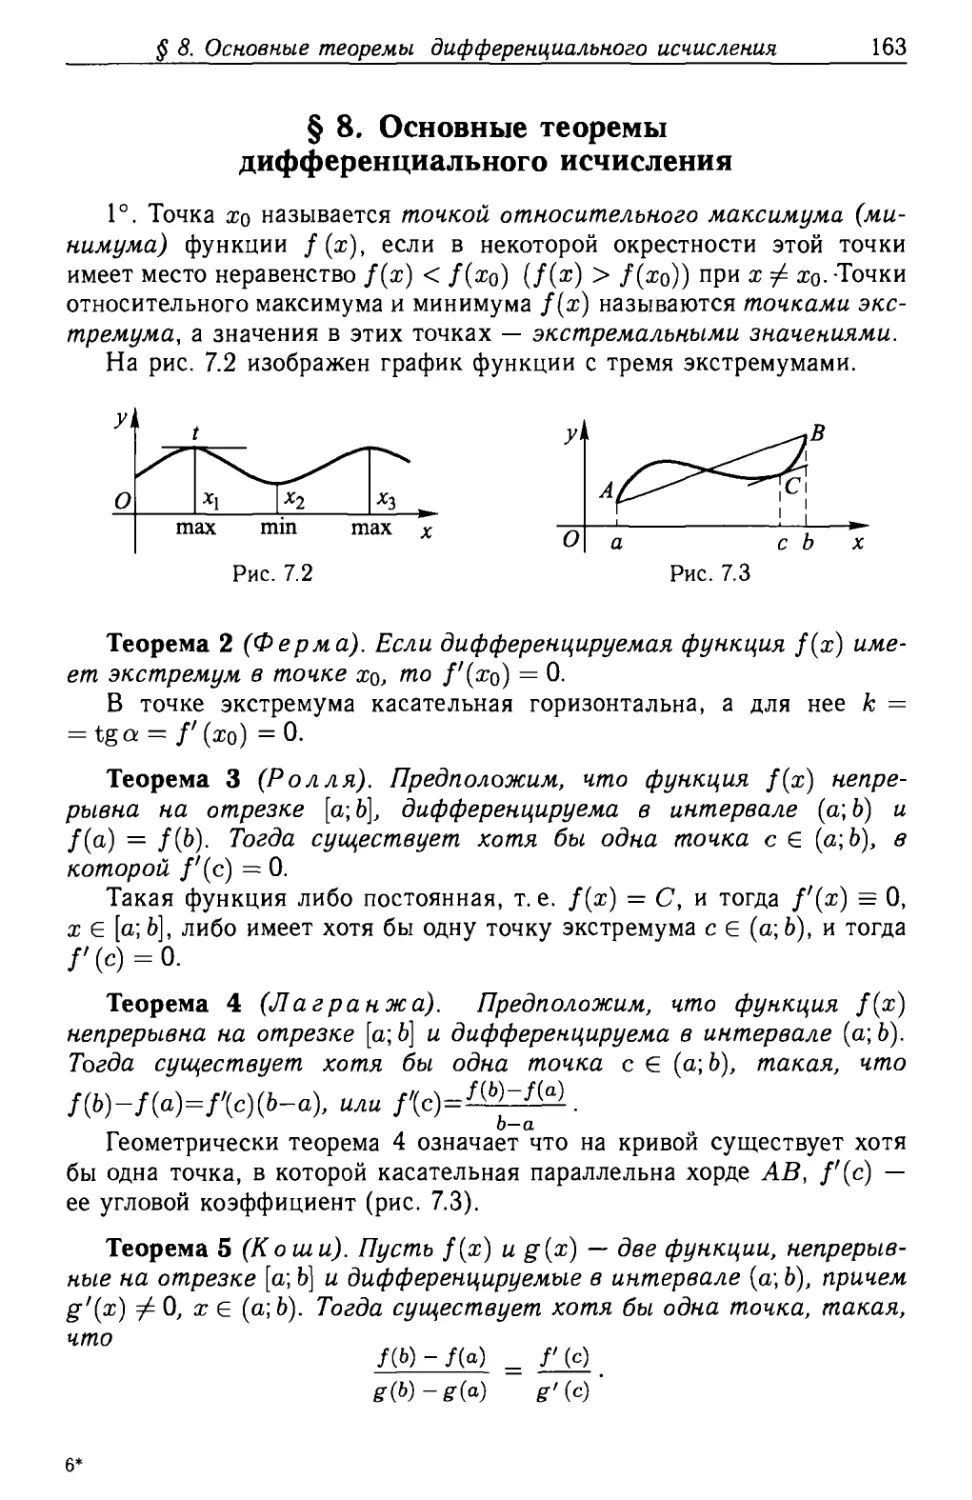 § 8. Основные теоремы дифференциального исчисления